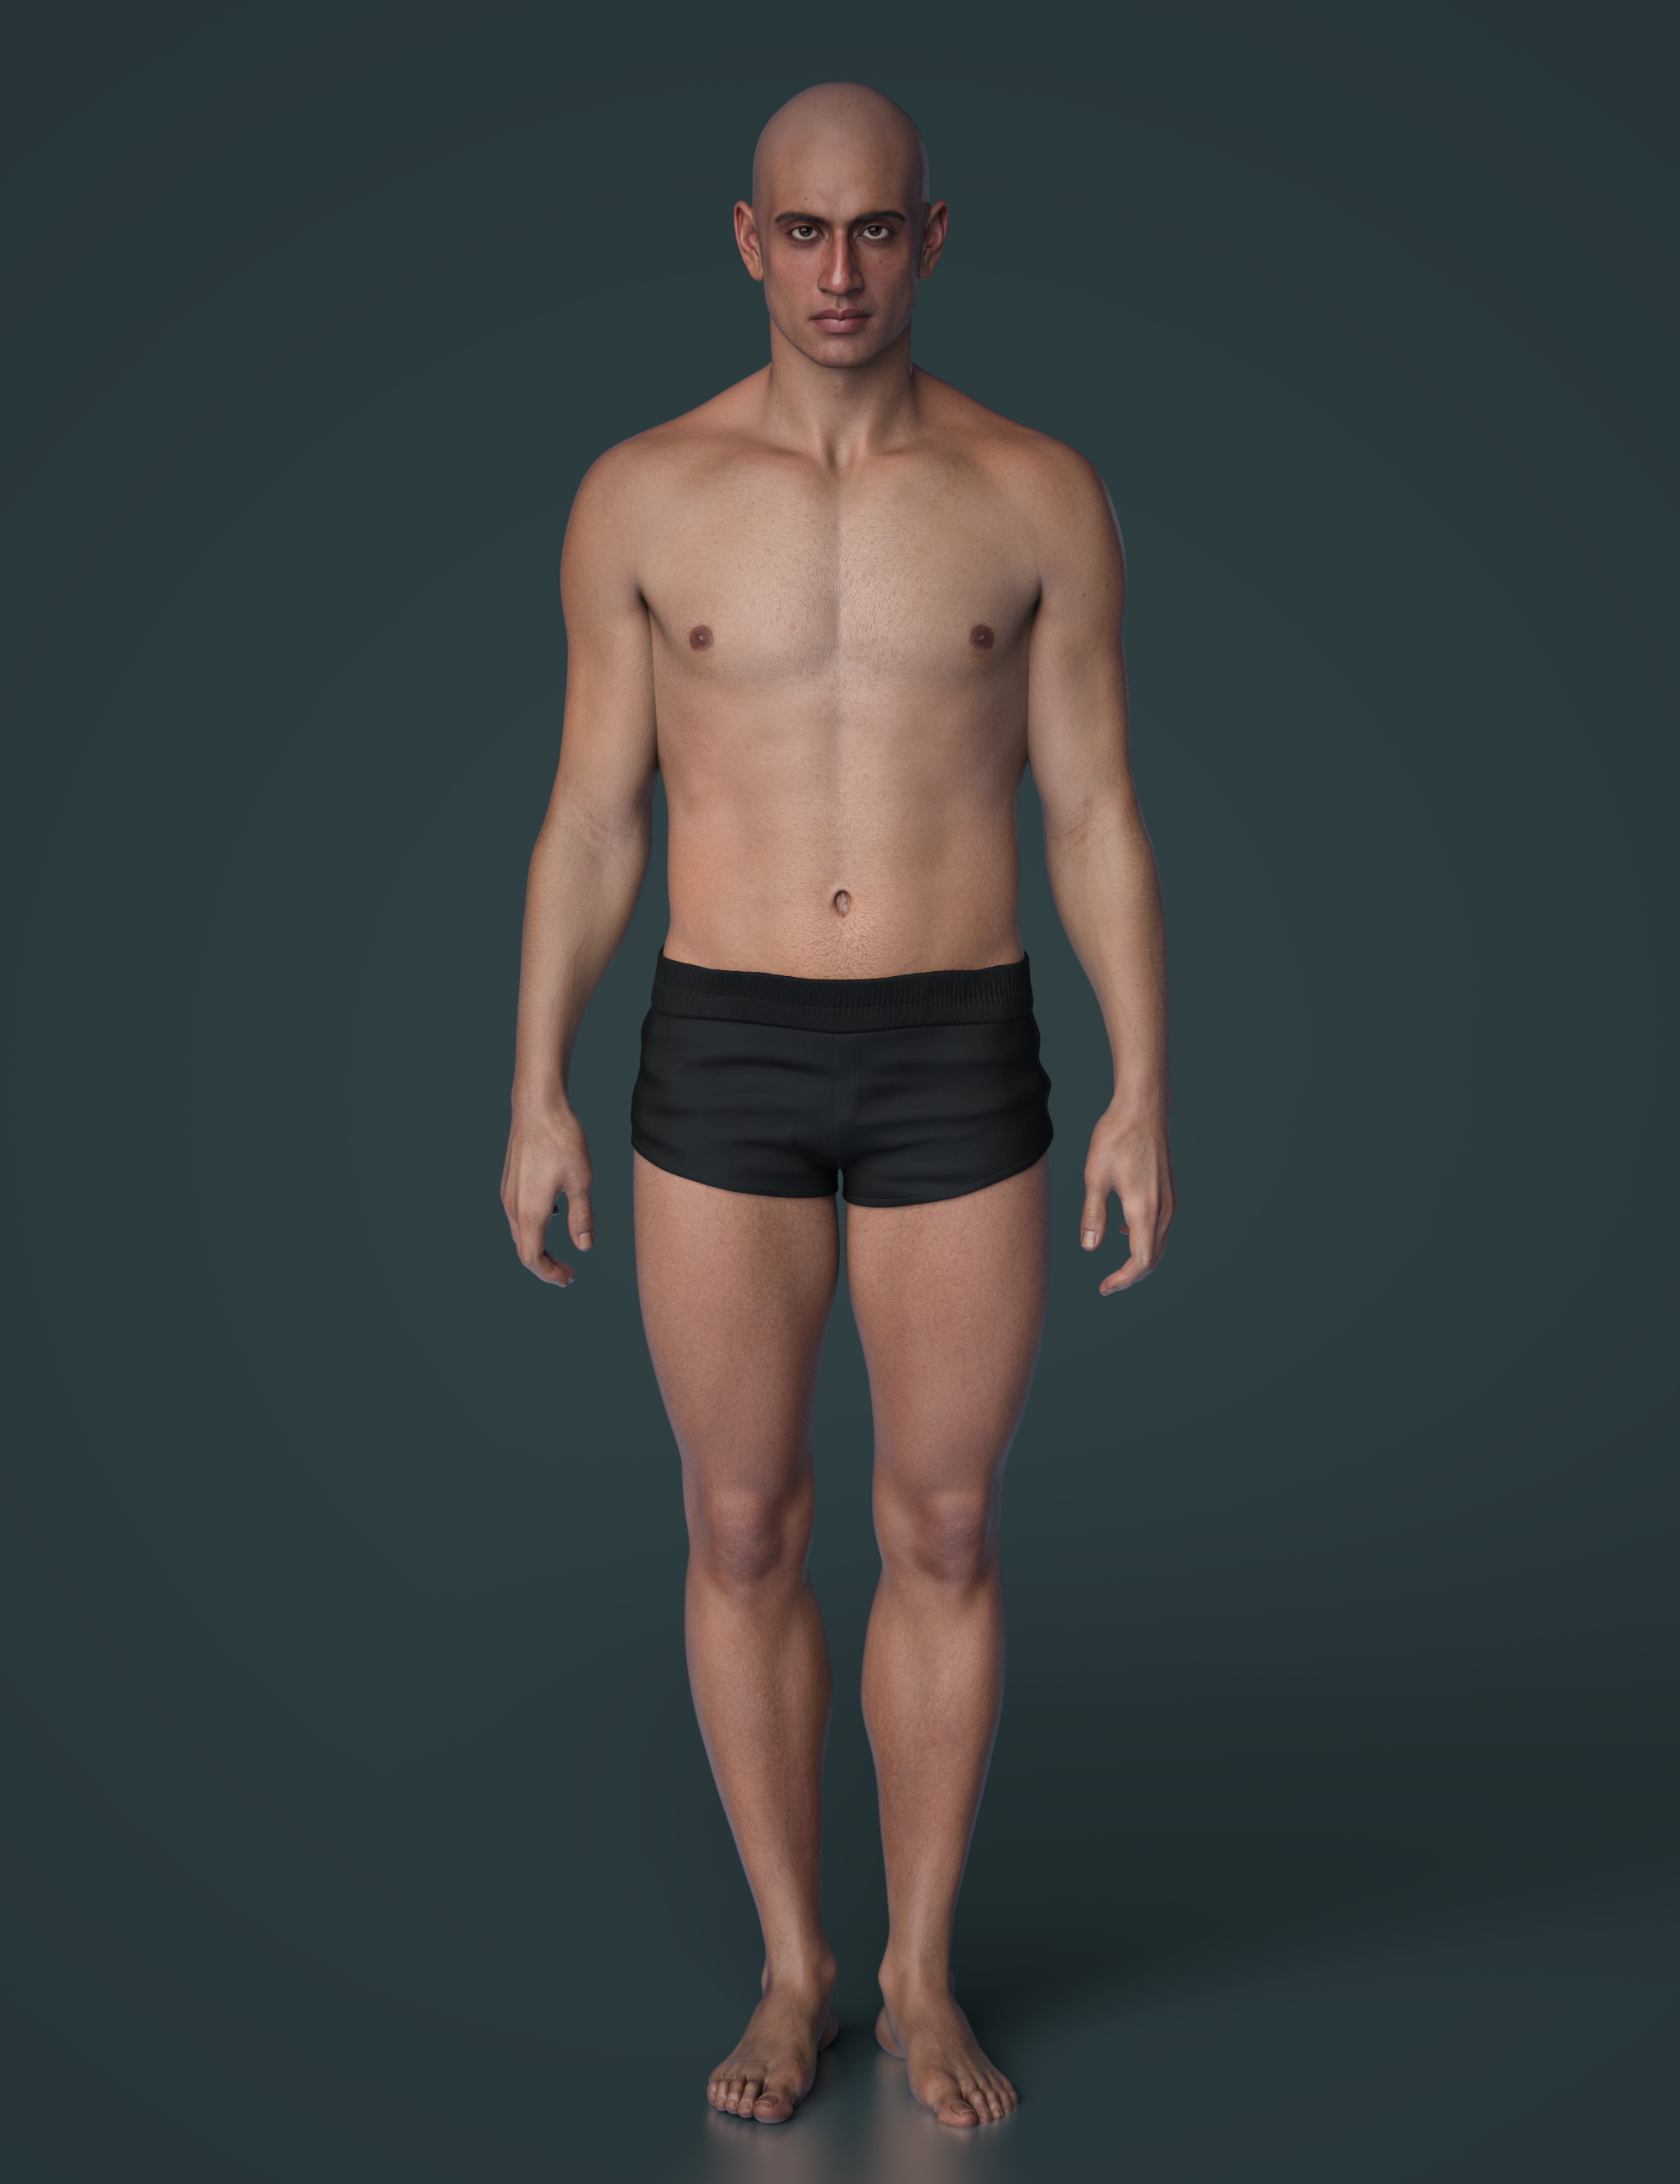 John 9 Muscular Shape Add-On by: , 3D Models by Daz 3D